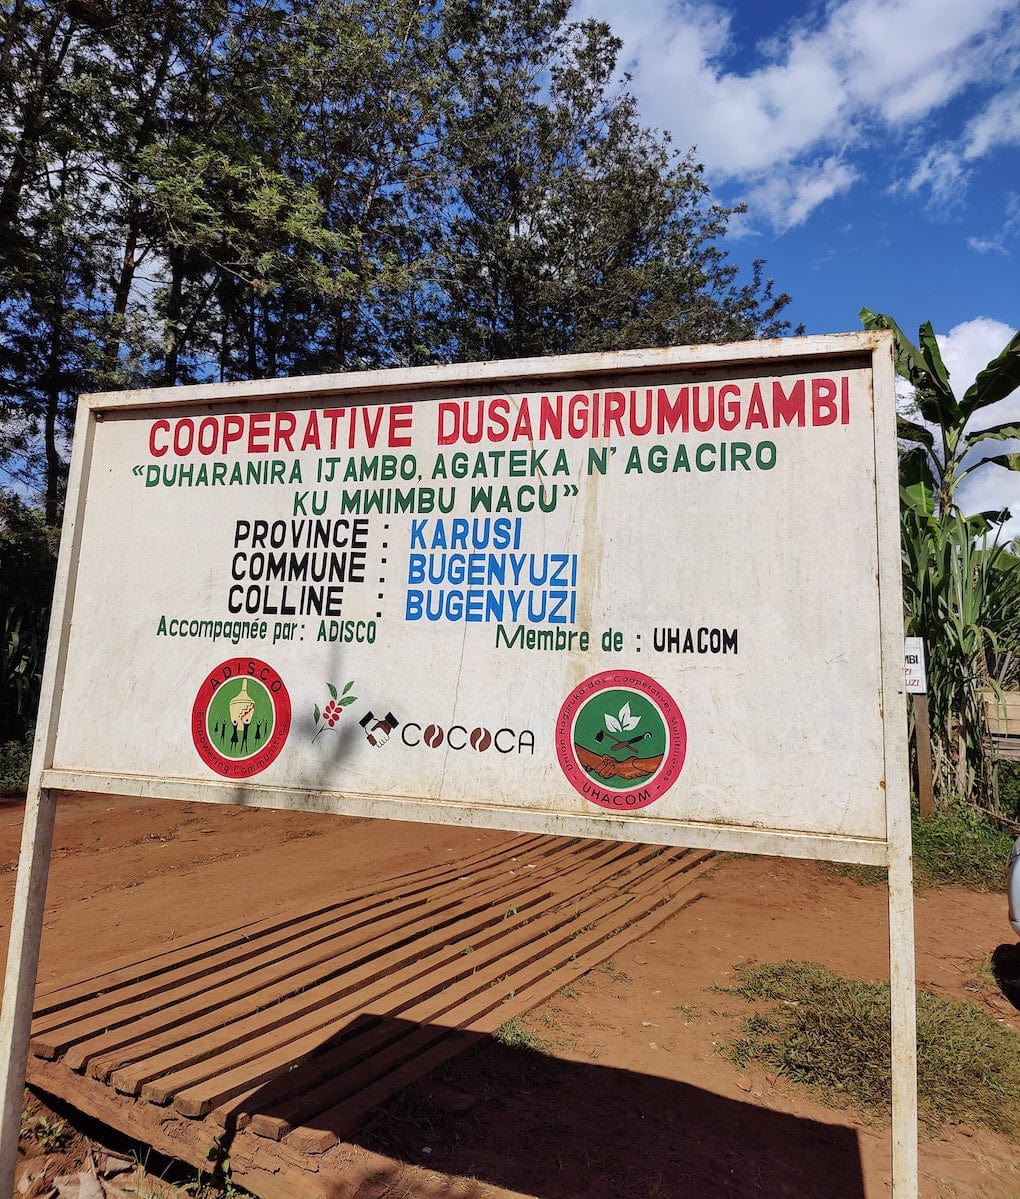 Dusangirumugambi, Burundi